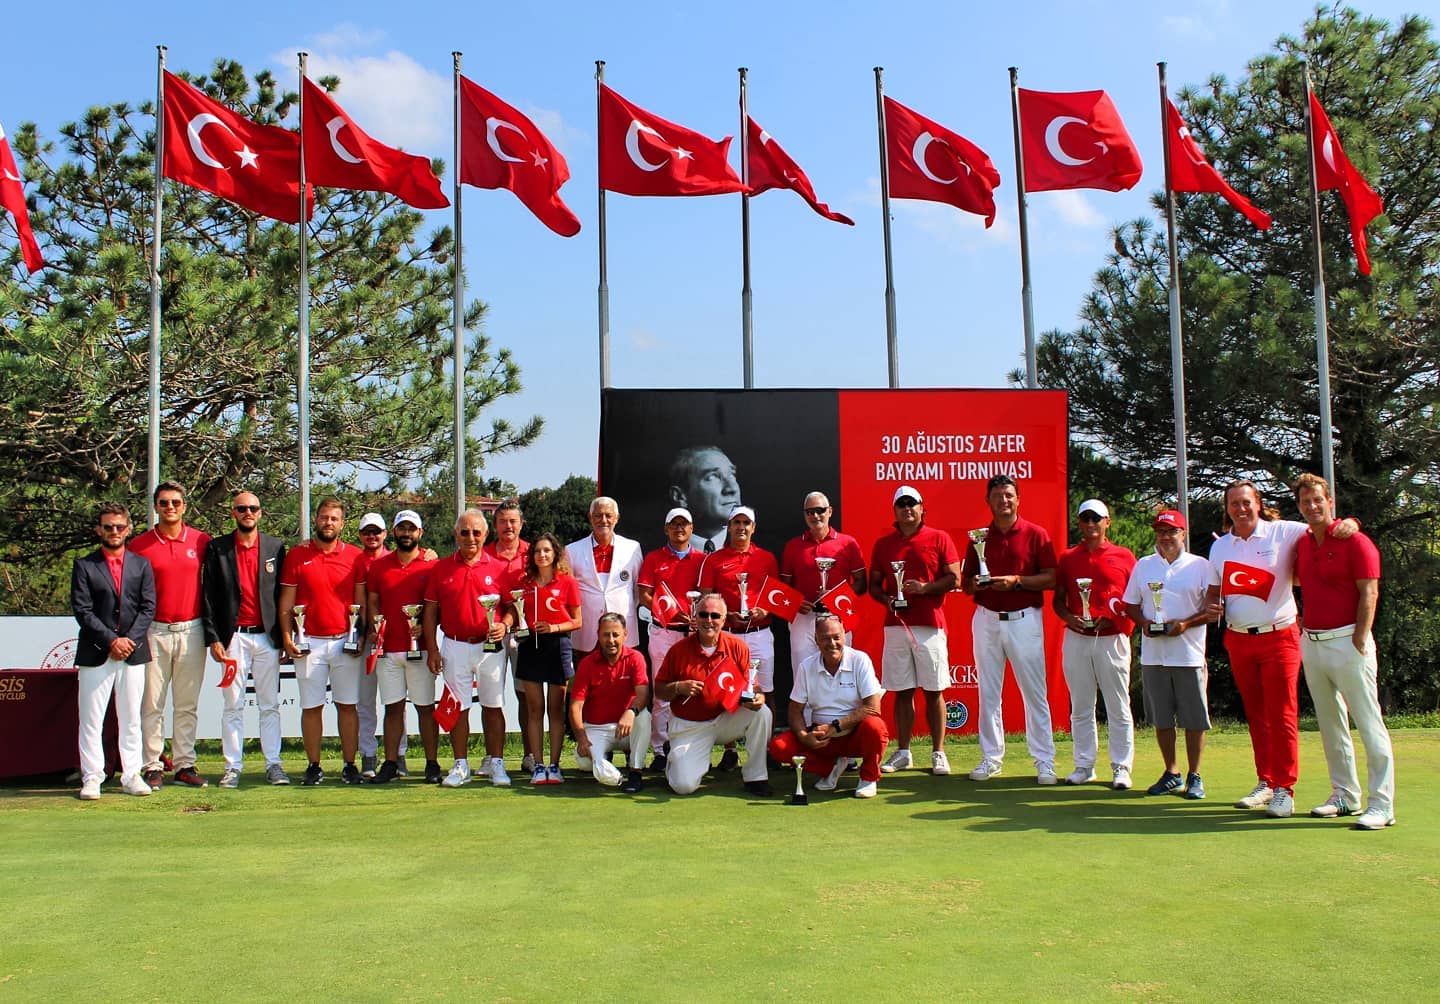 Silivri'de, 30 Ağustos Zafer Bayramı Anısına Golf Turnuvası Düzenlendi